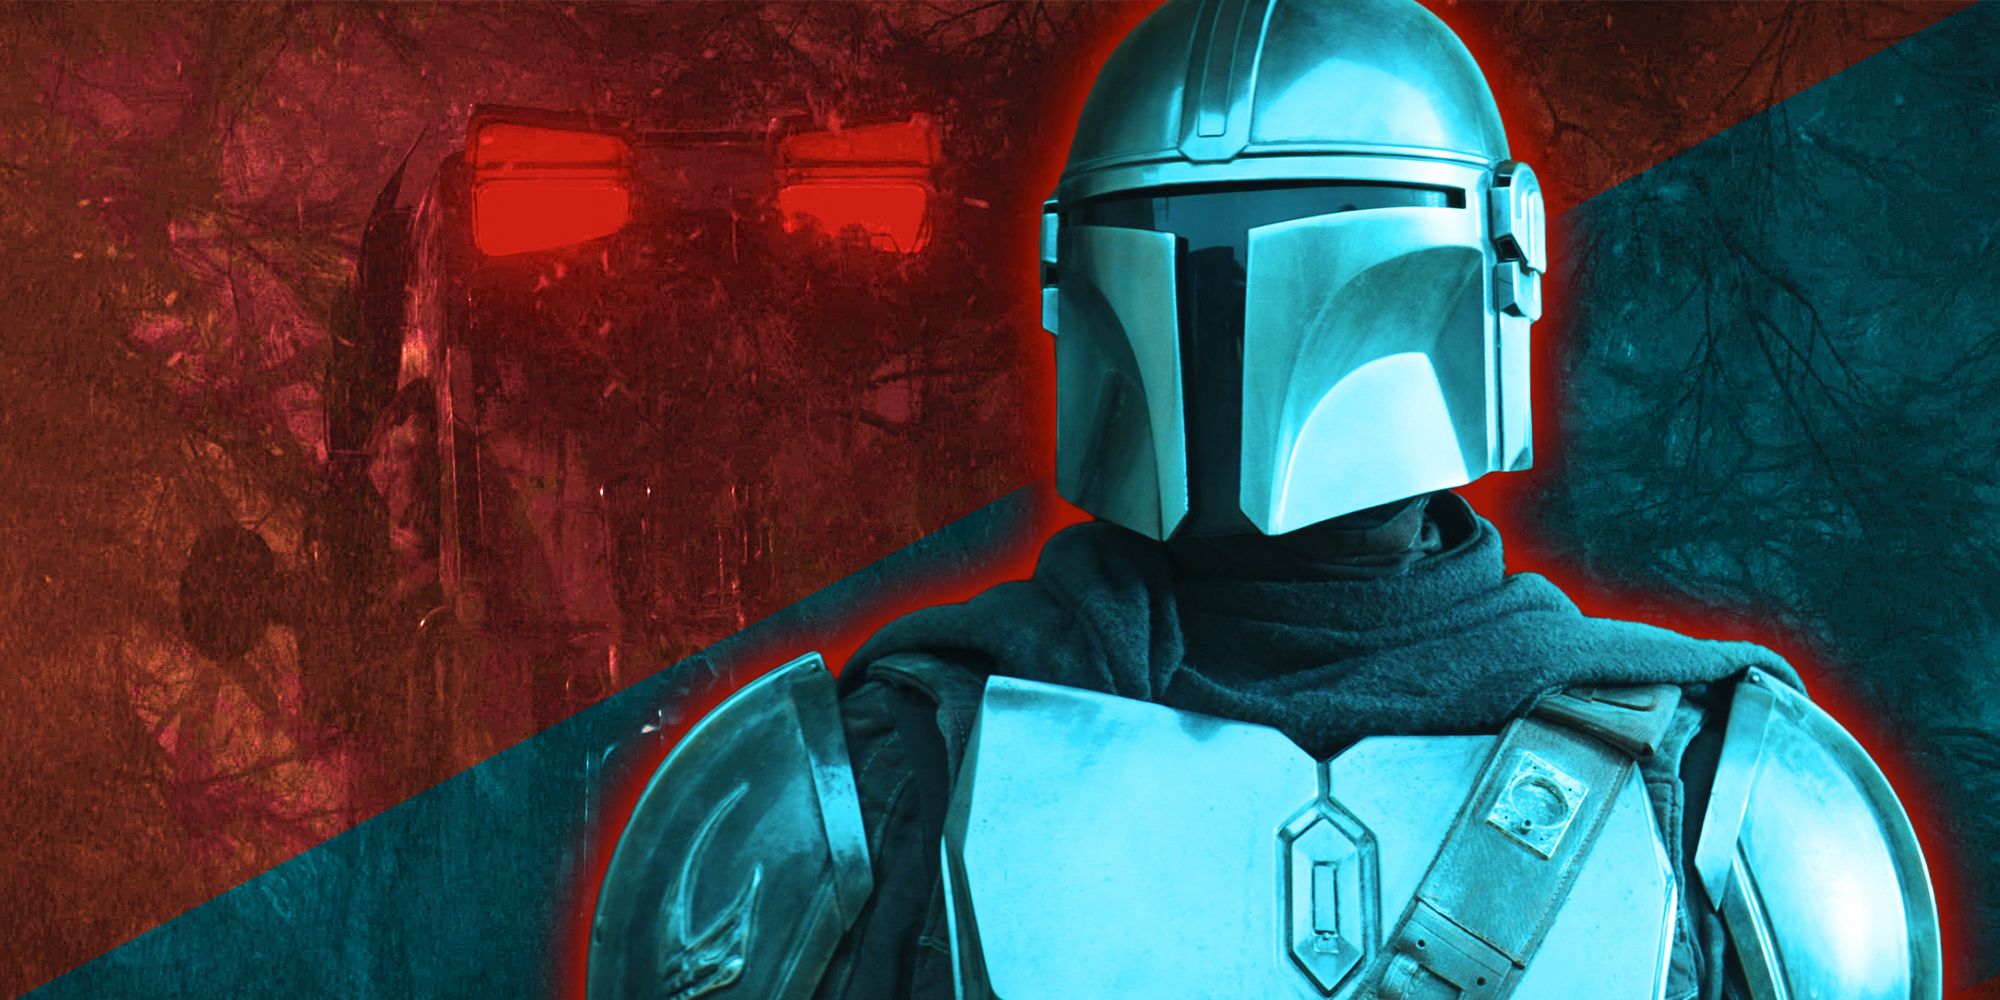 Din Djarin se enfrenta al poder del imperio en un nuevo e increíble póster de Star Wars